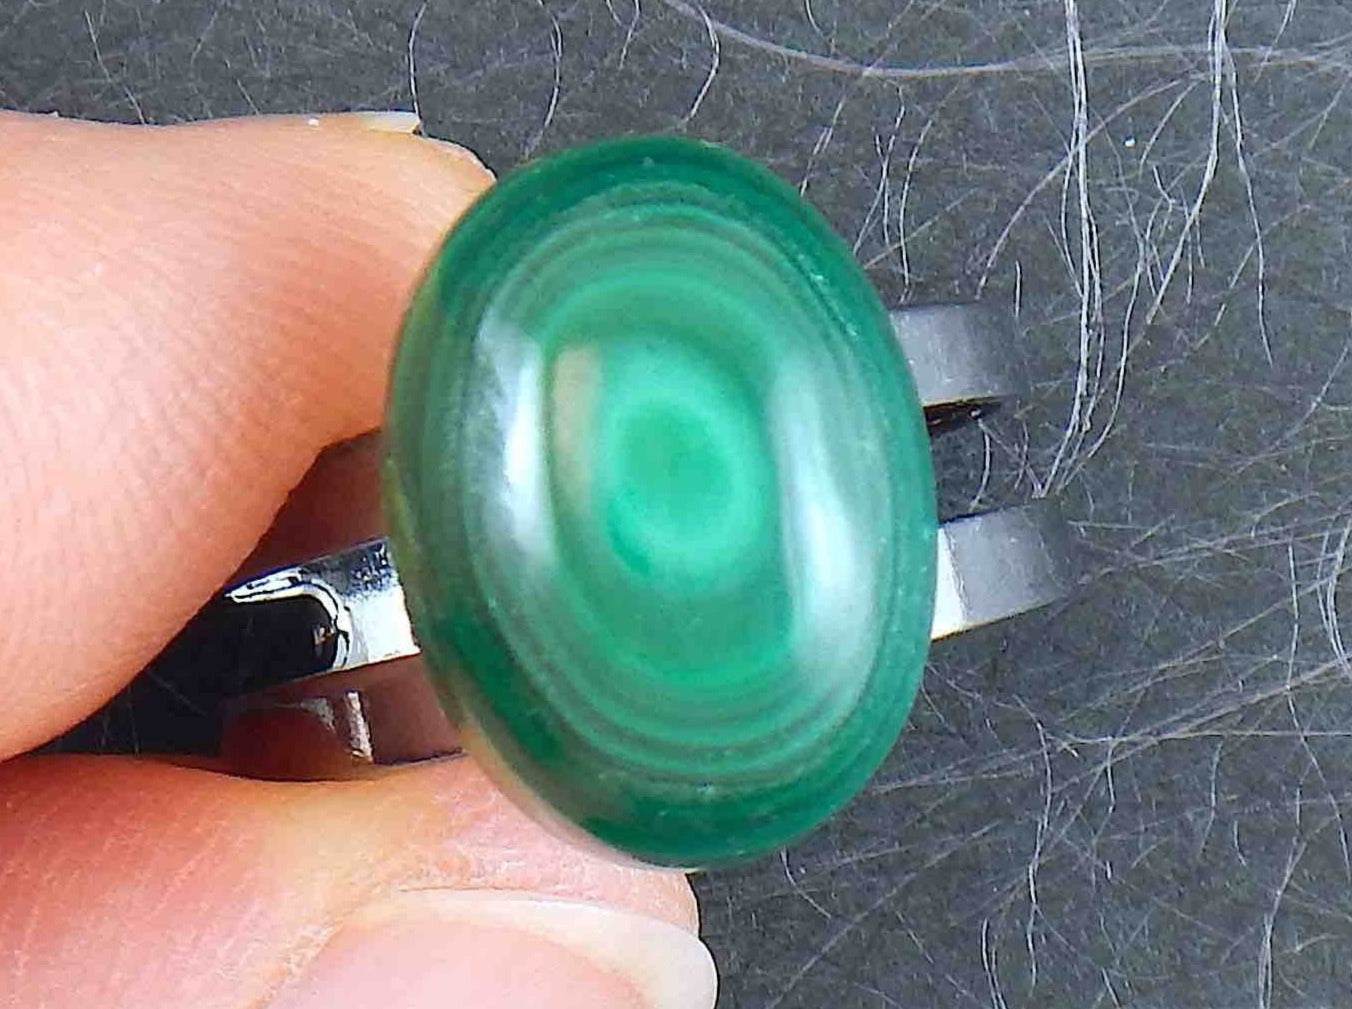 Bague petit ovale de malachite, cercles concentriques vert foncé et clair, base en méta nickel noir ajustable (US 5-6)